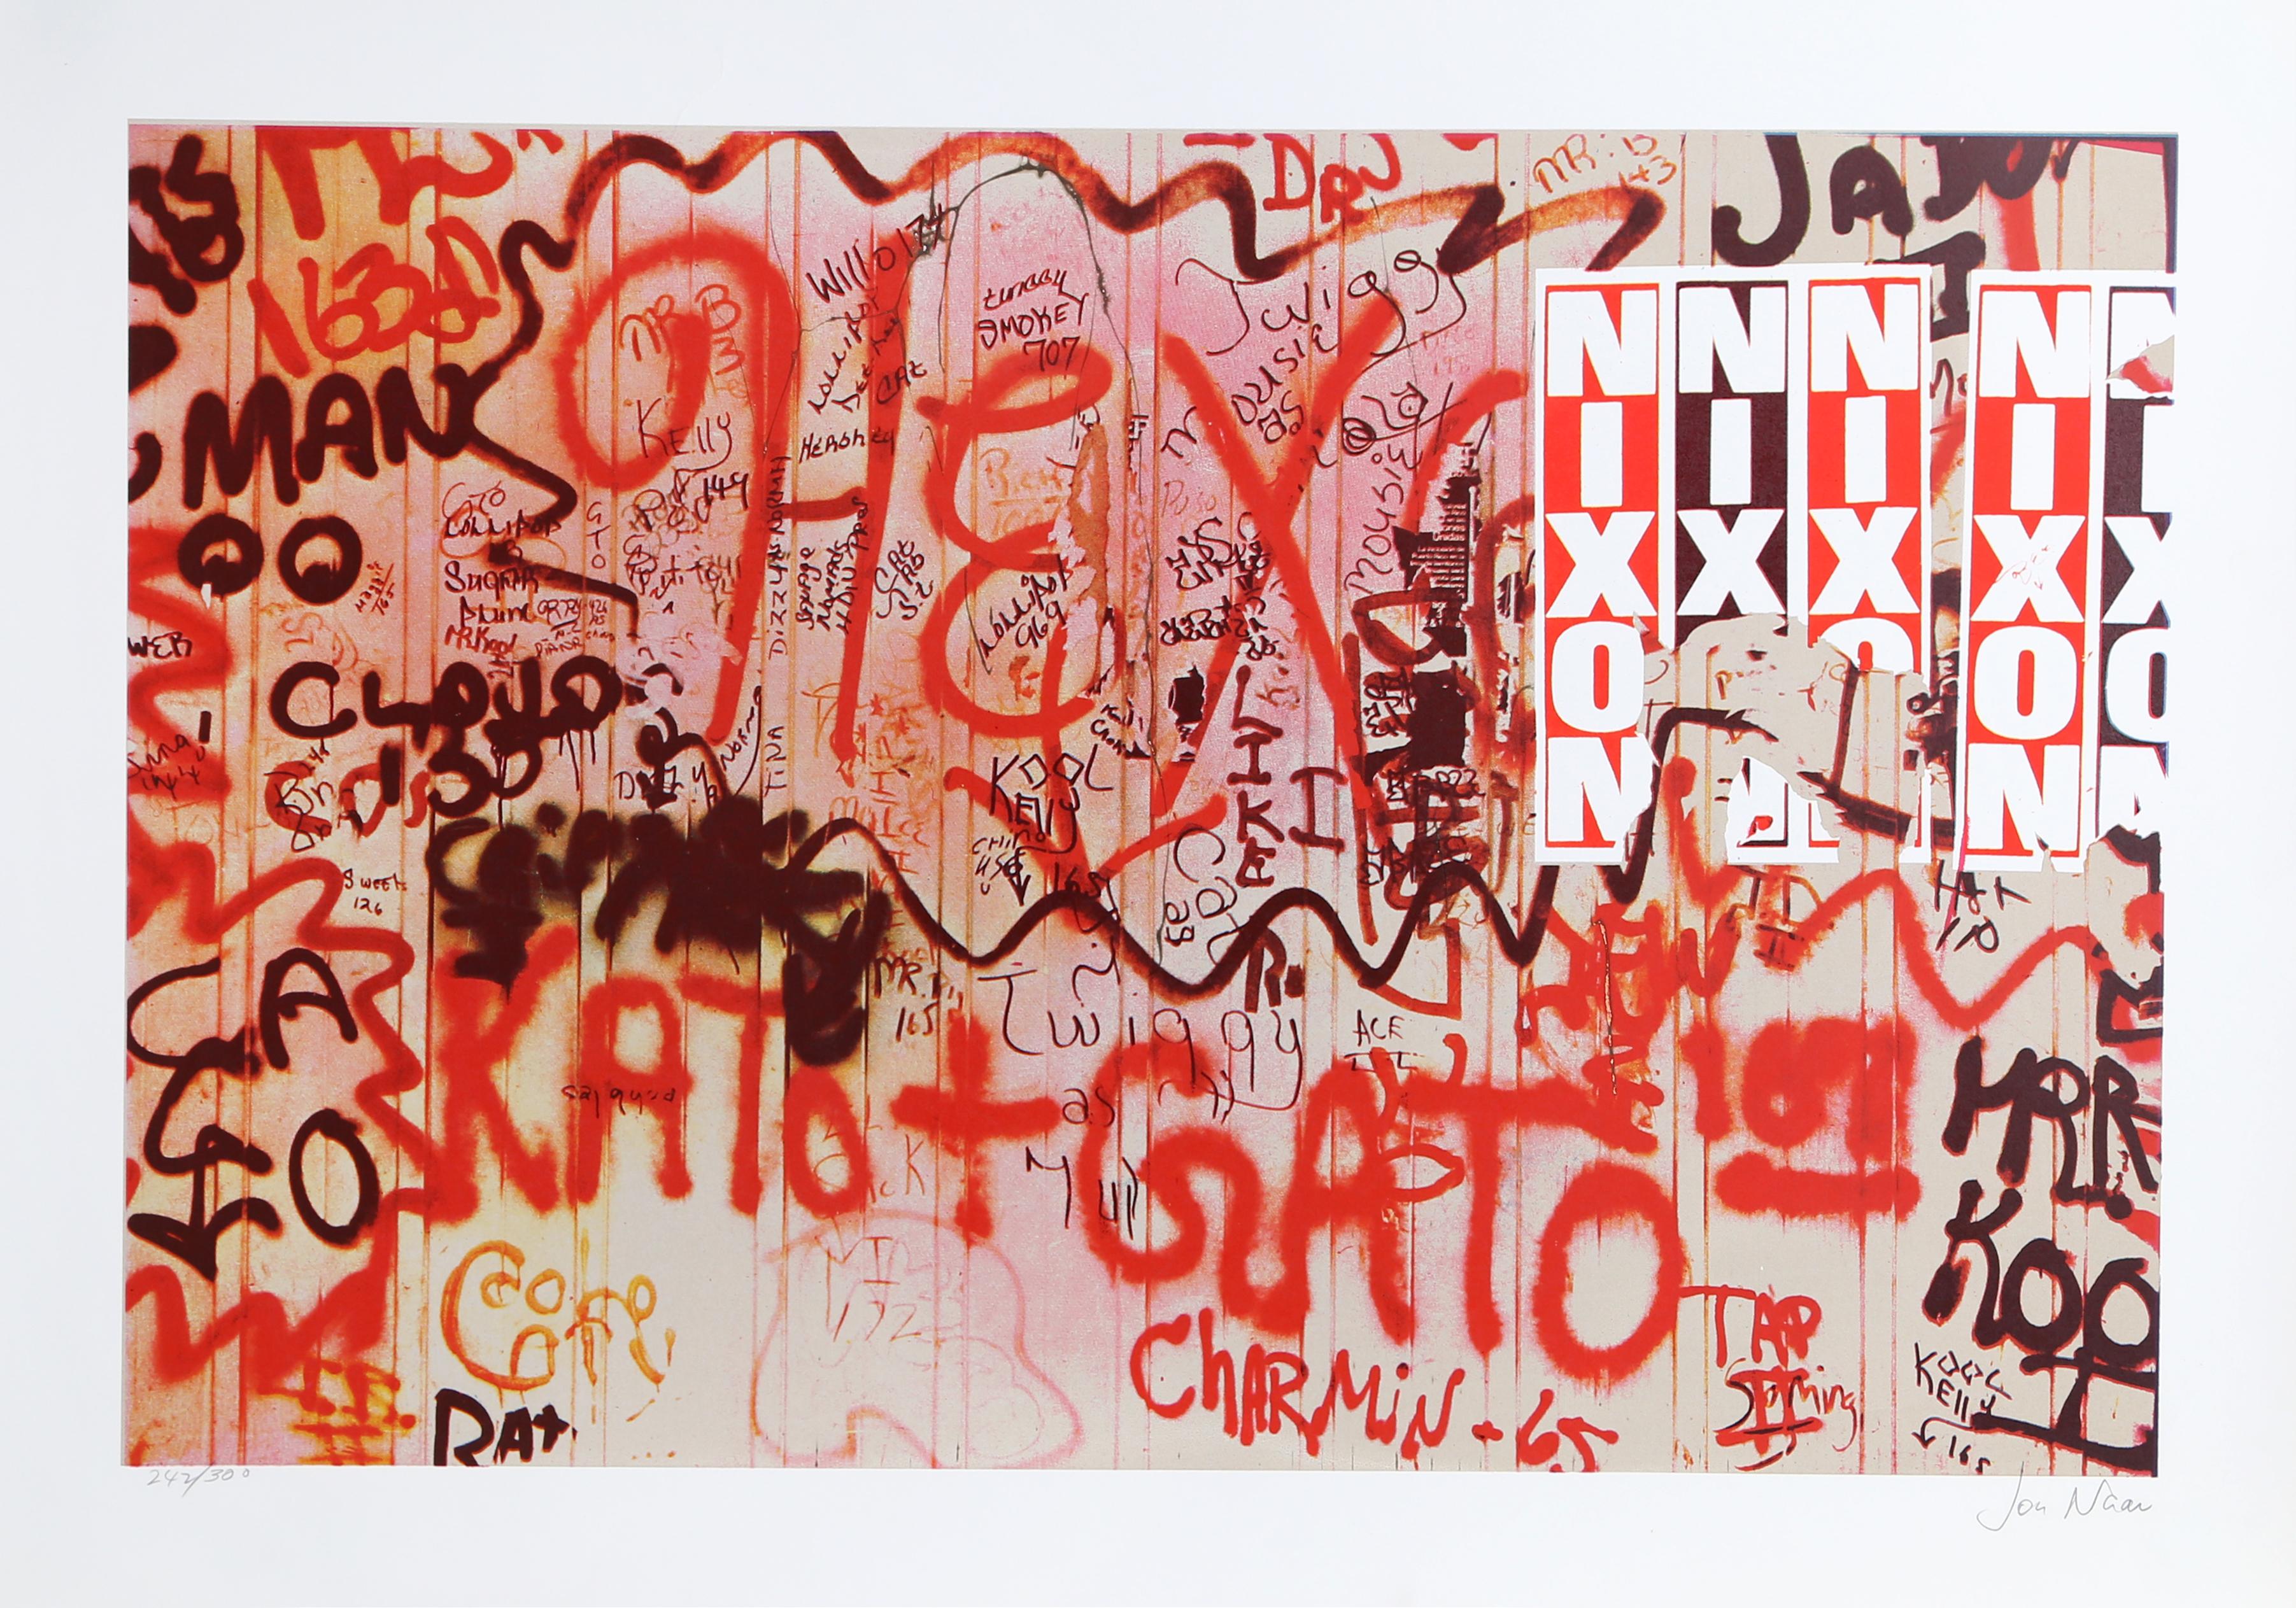 Artiste : Jon Naar
Titre : Nixon de Faith of Graffiti
Année : 1974
Médium : Sérigraphie, signée et numérotée au crayon
Edition : 300
Taille : 24.5 x 34 pouces

Imprimé par Circle Press, Chicago
Publié par Documentary Photos NYC Graffiti Art
dans le